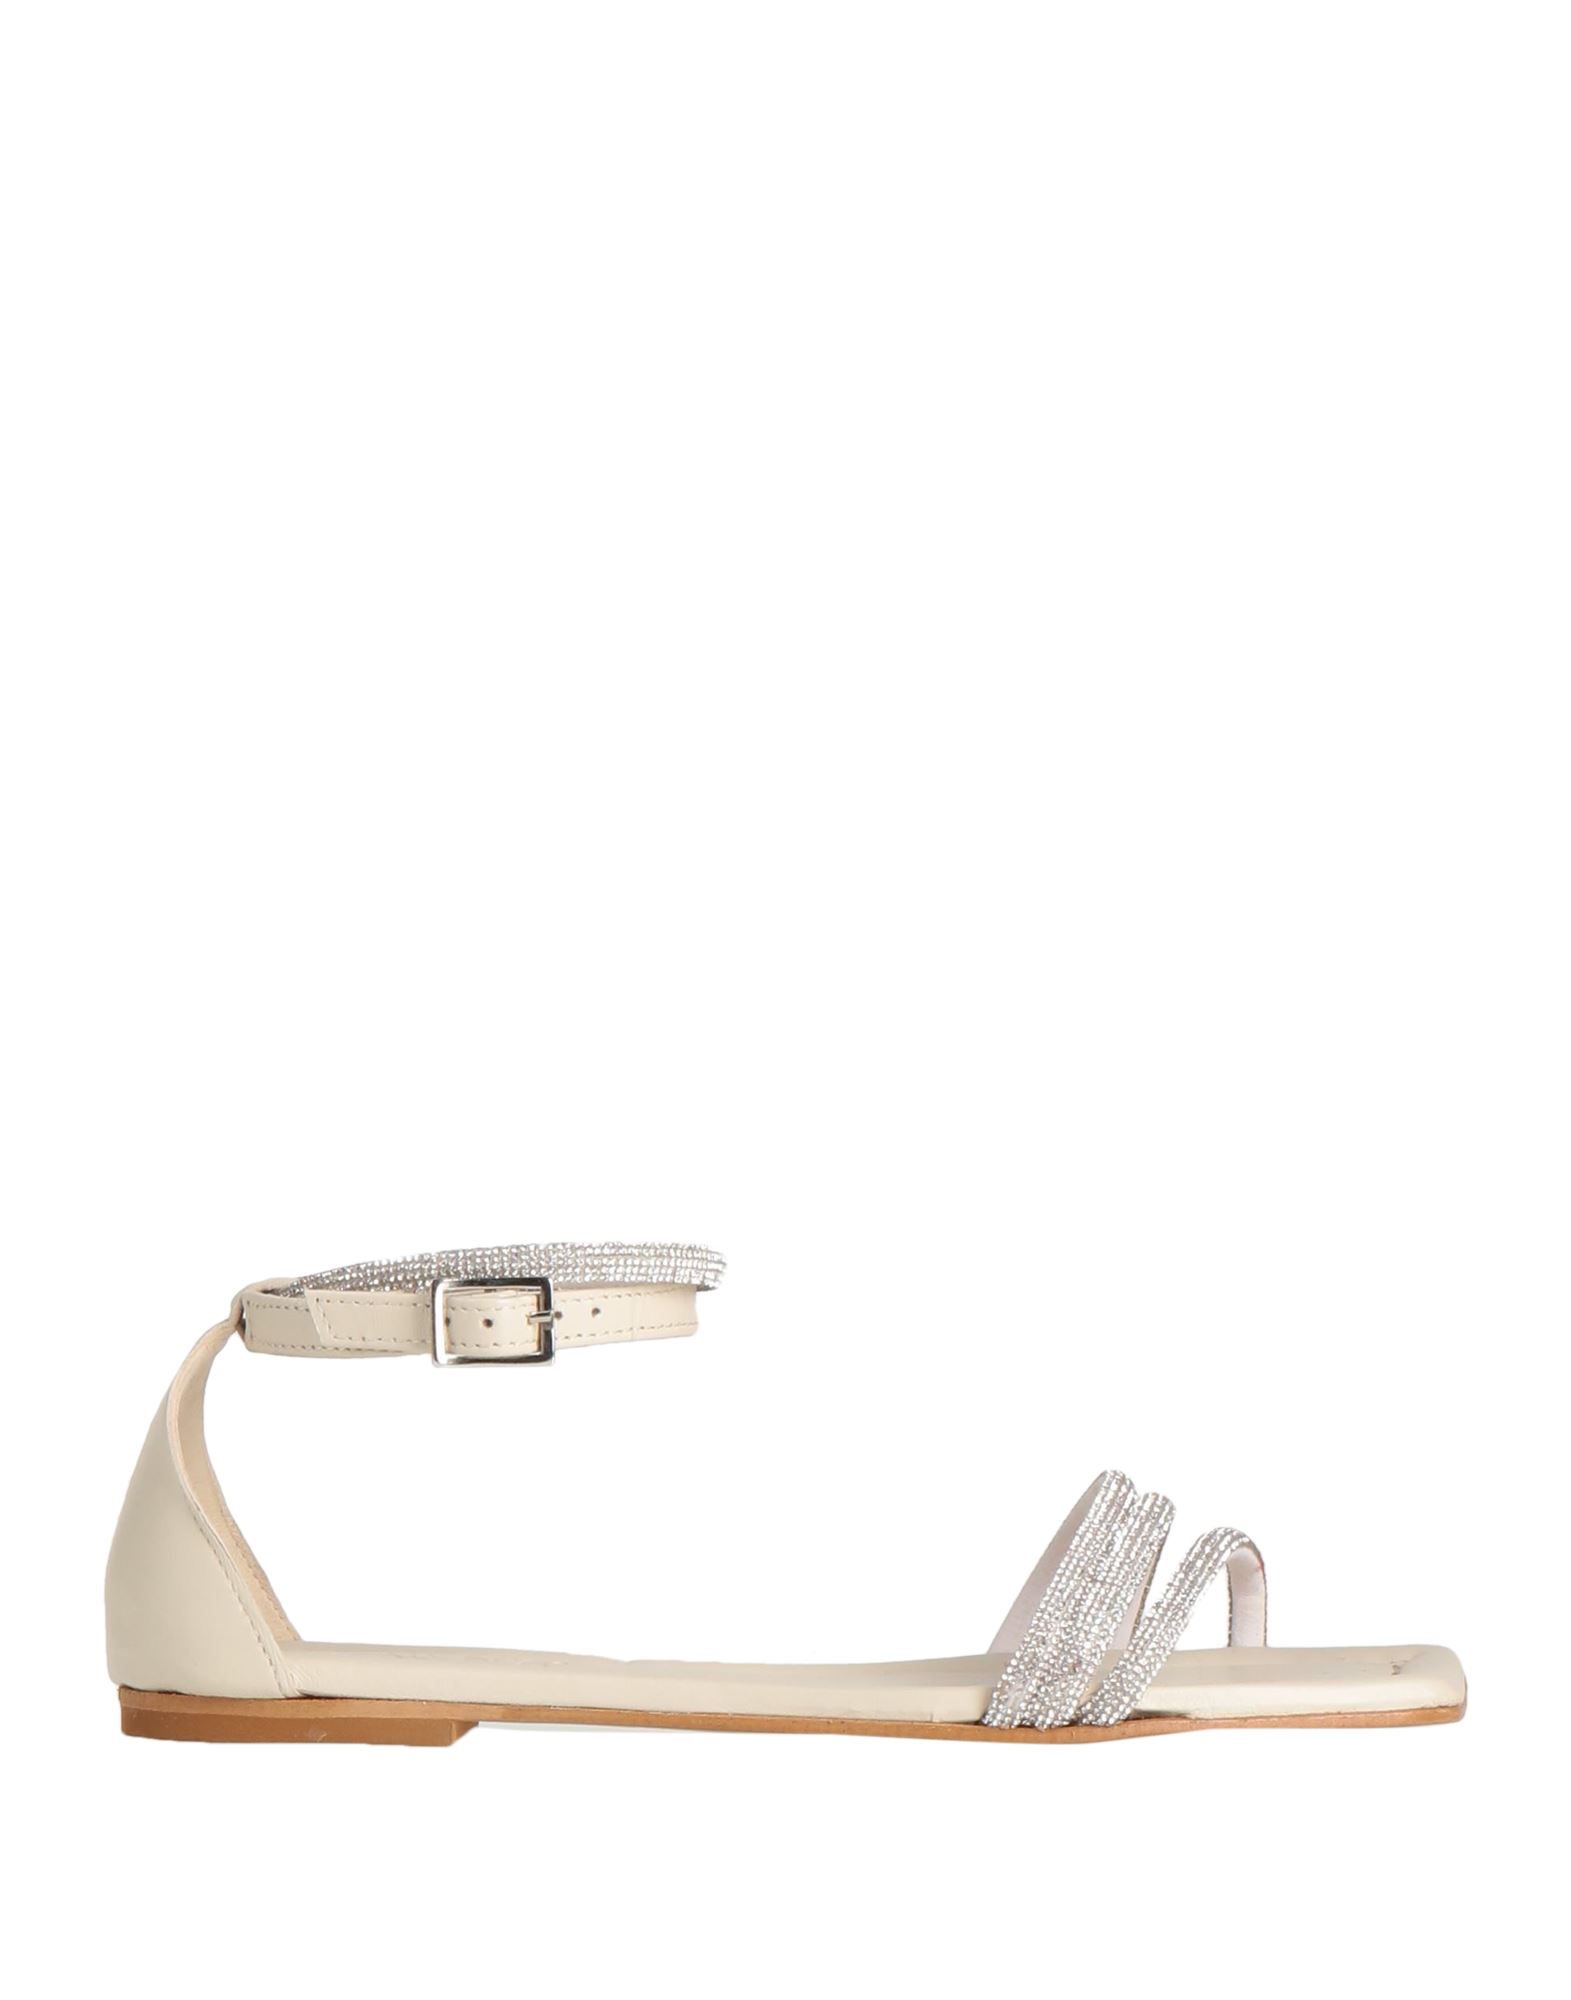 Brawn's Sandals In White